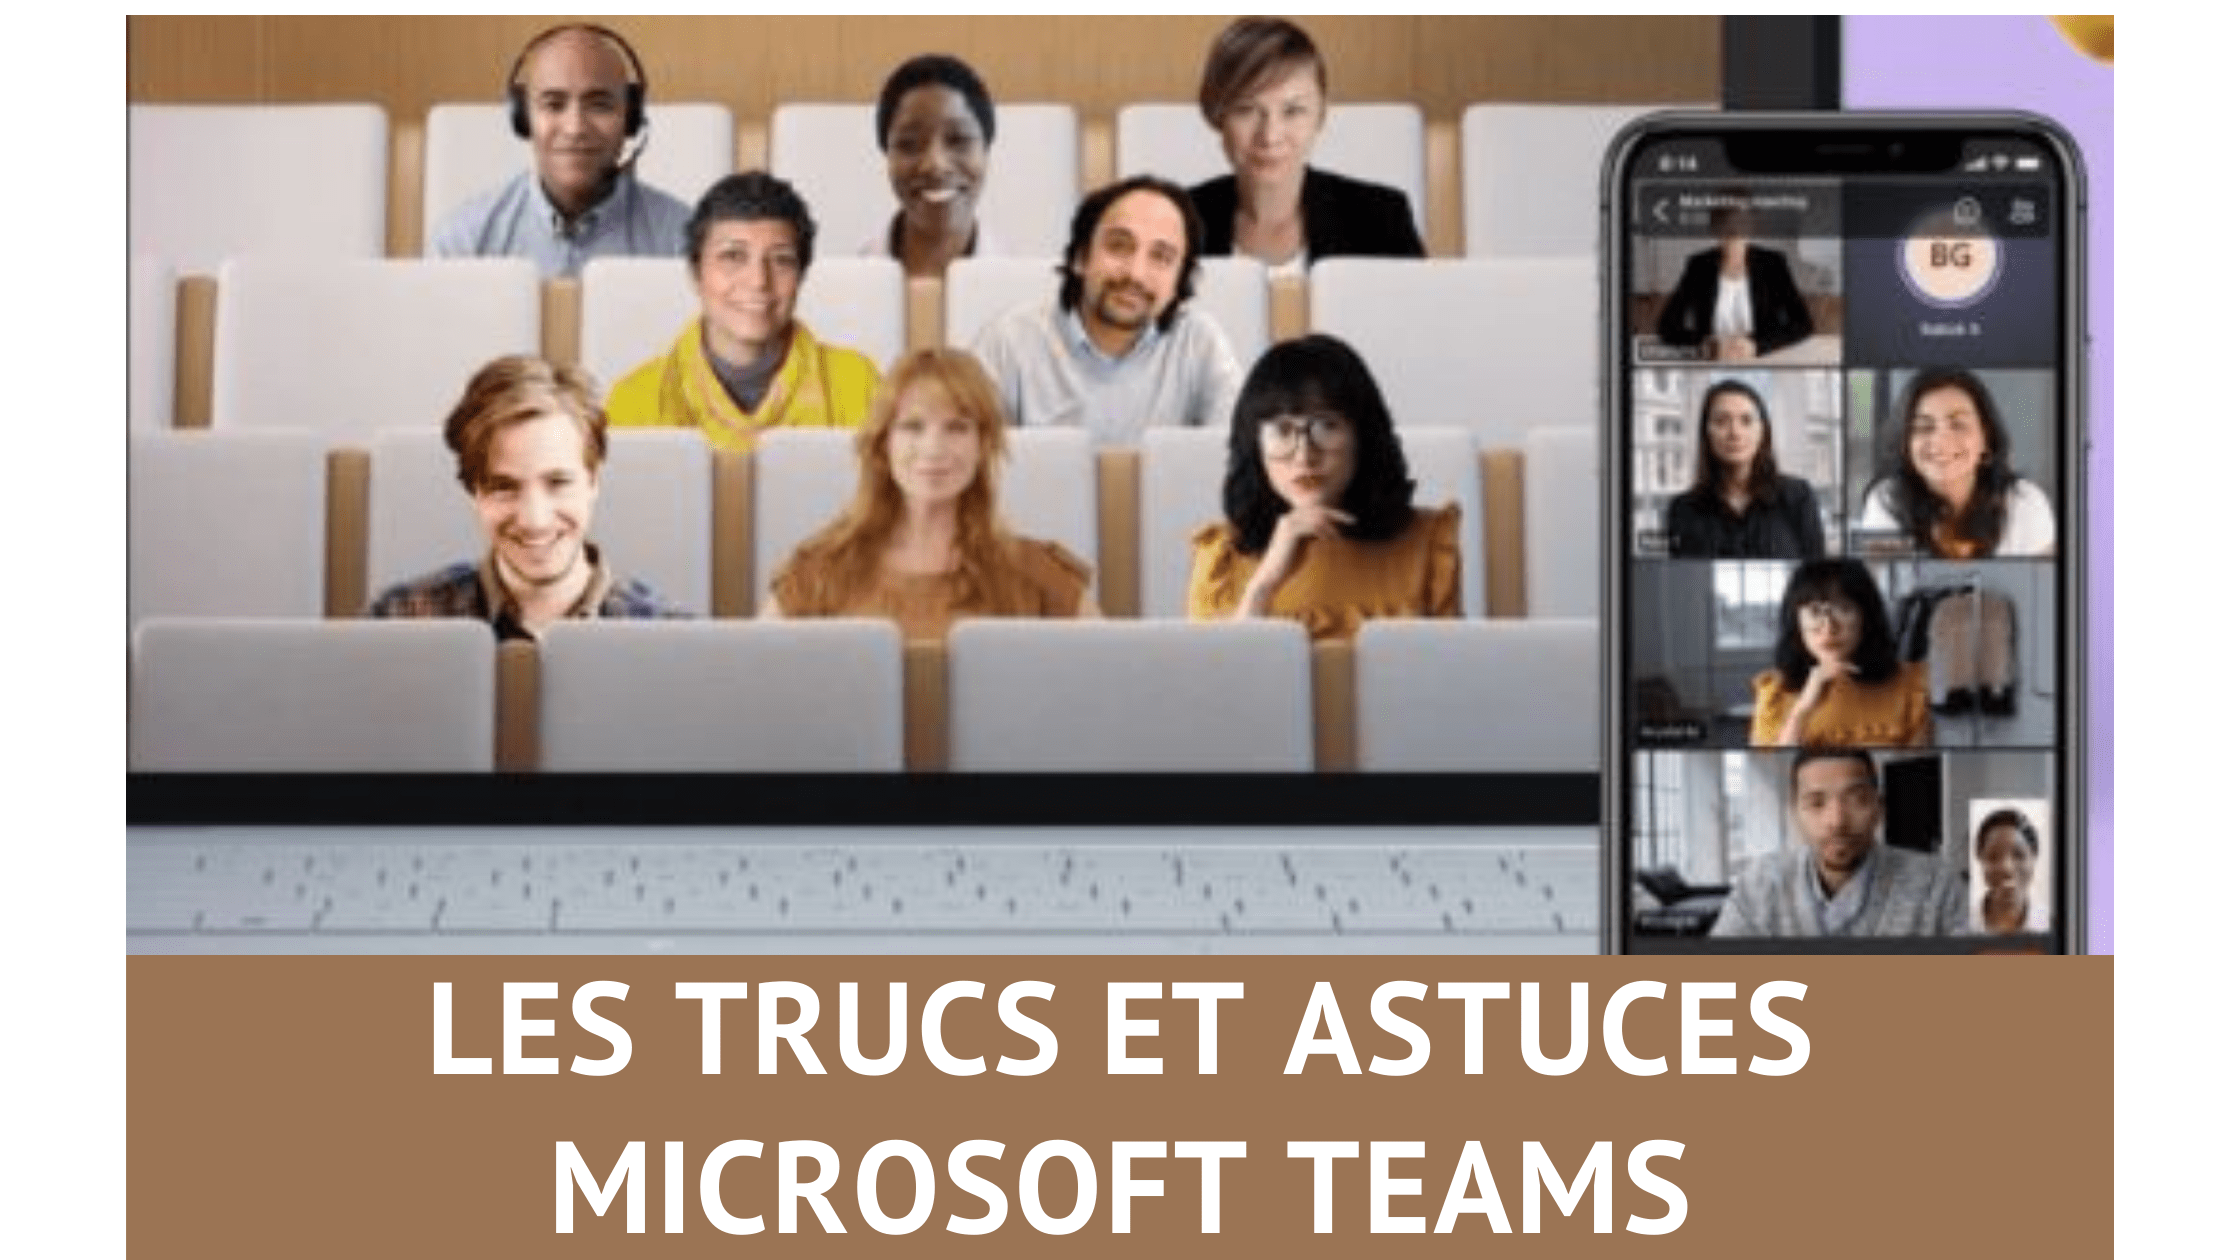 Les trucs et astuces pour Microsoft Teams, découvrez 33 fonctions méconnues de Teams ! 36